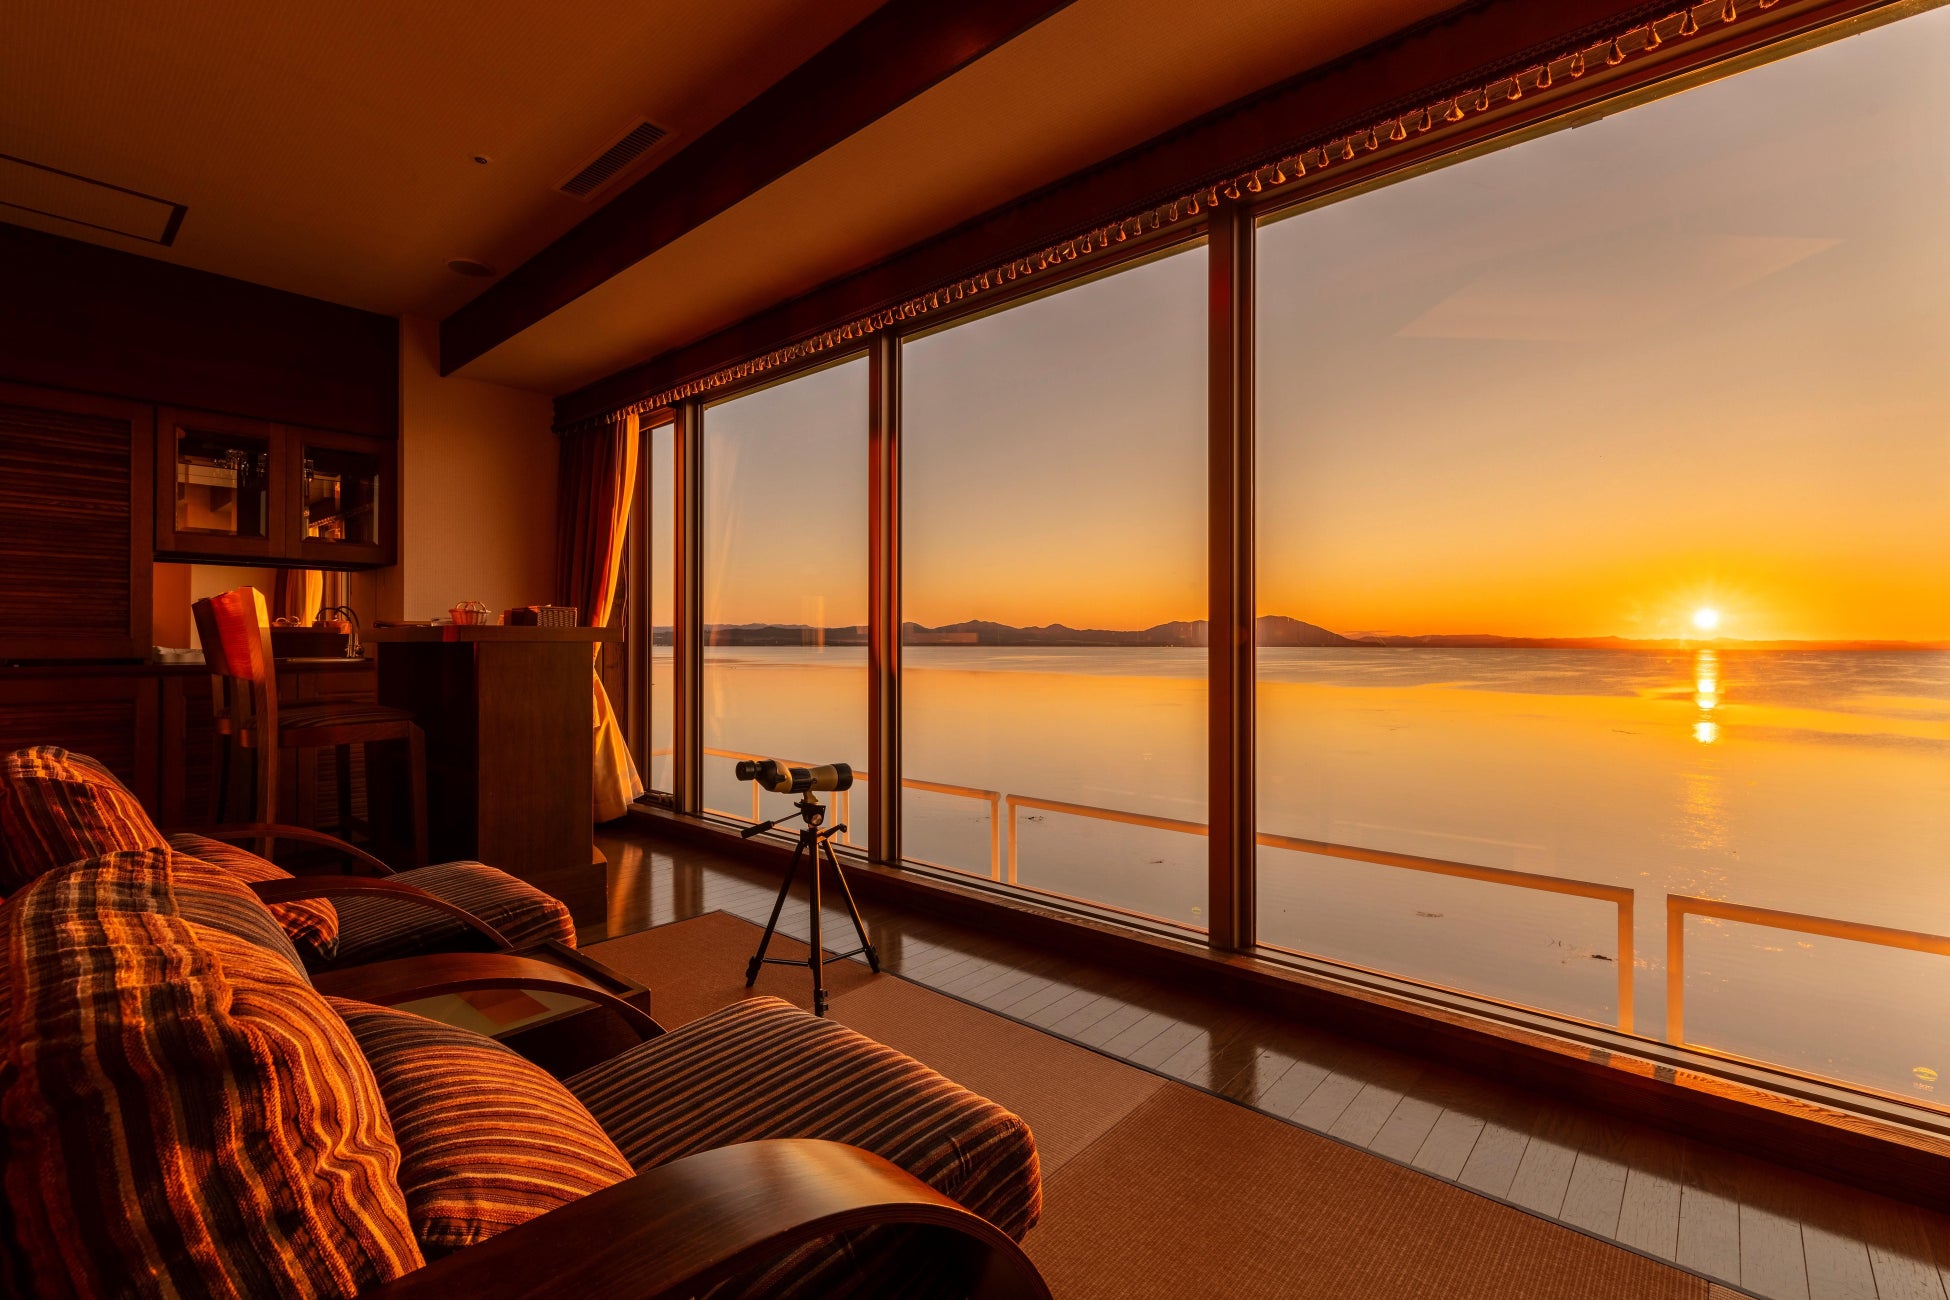 北海道リゾート 鶴雅より、「サロマ湖 鶴雅リゾート」に異なる3タイプの新客室が誕生！スタイリッシュなデザインでサロマ湖の雄大な景色に包まれる上質な滞在をご提案。